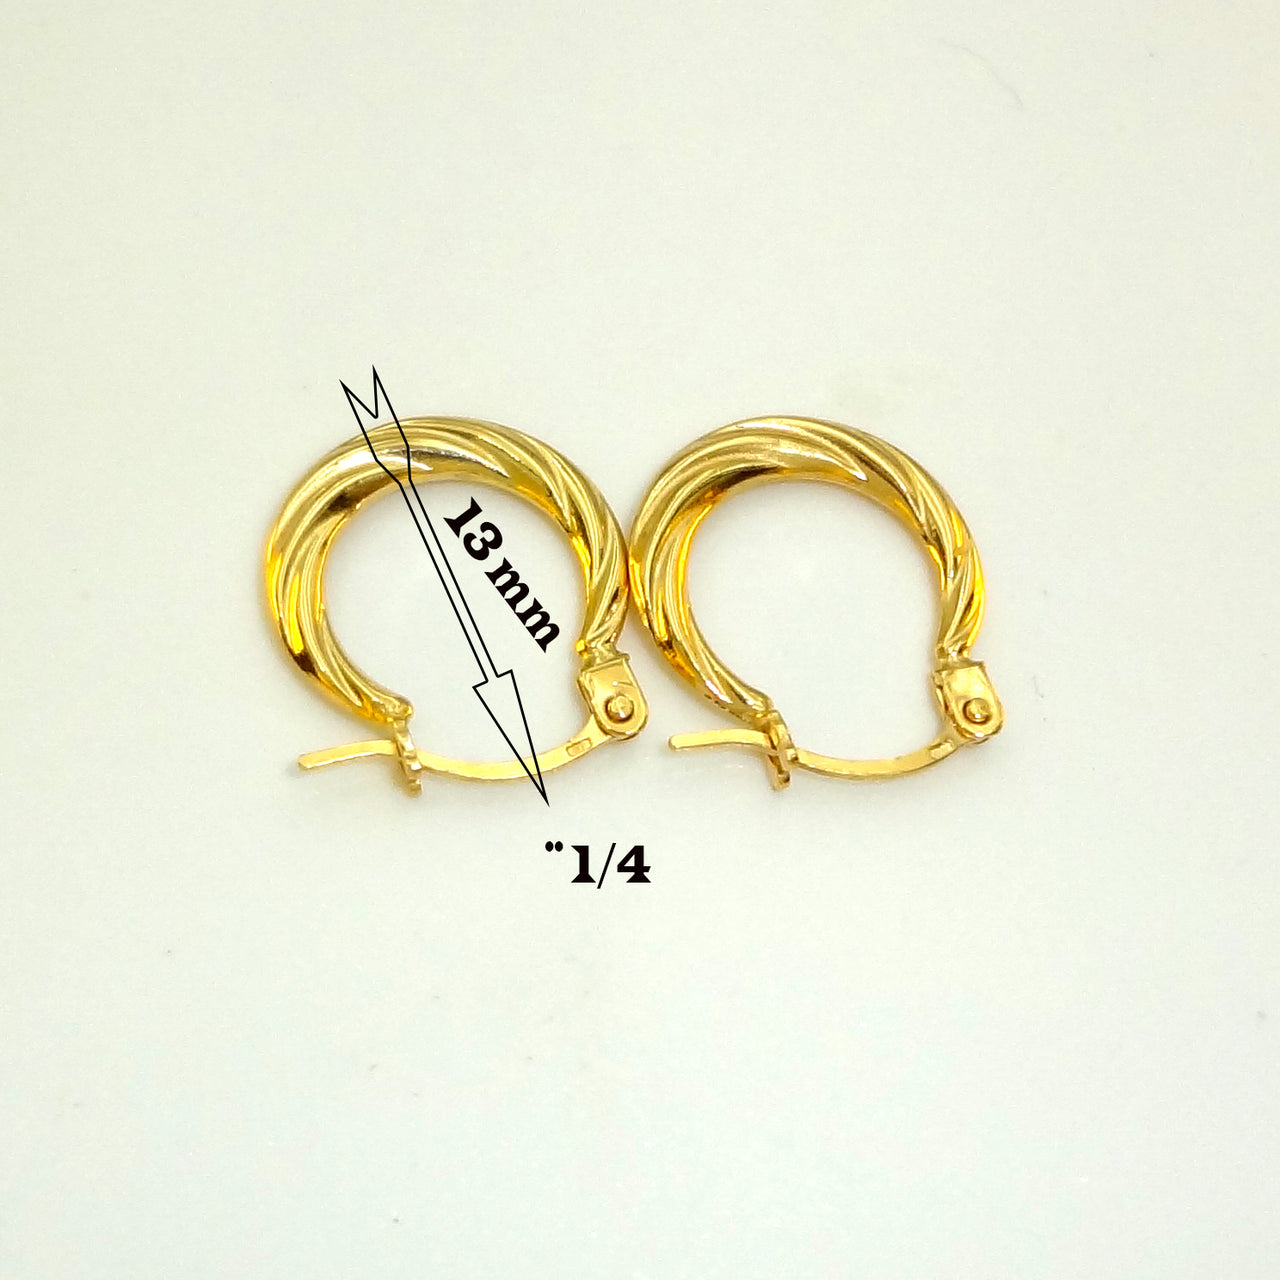 10k Gold Hoop Earrings for Girls. Argollas de Oro 10k para Niñas - Acosta´s jewelry